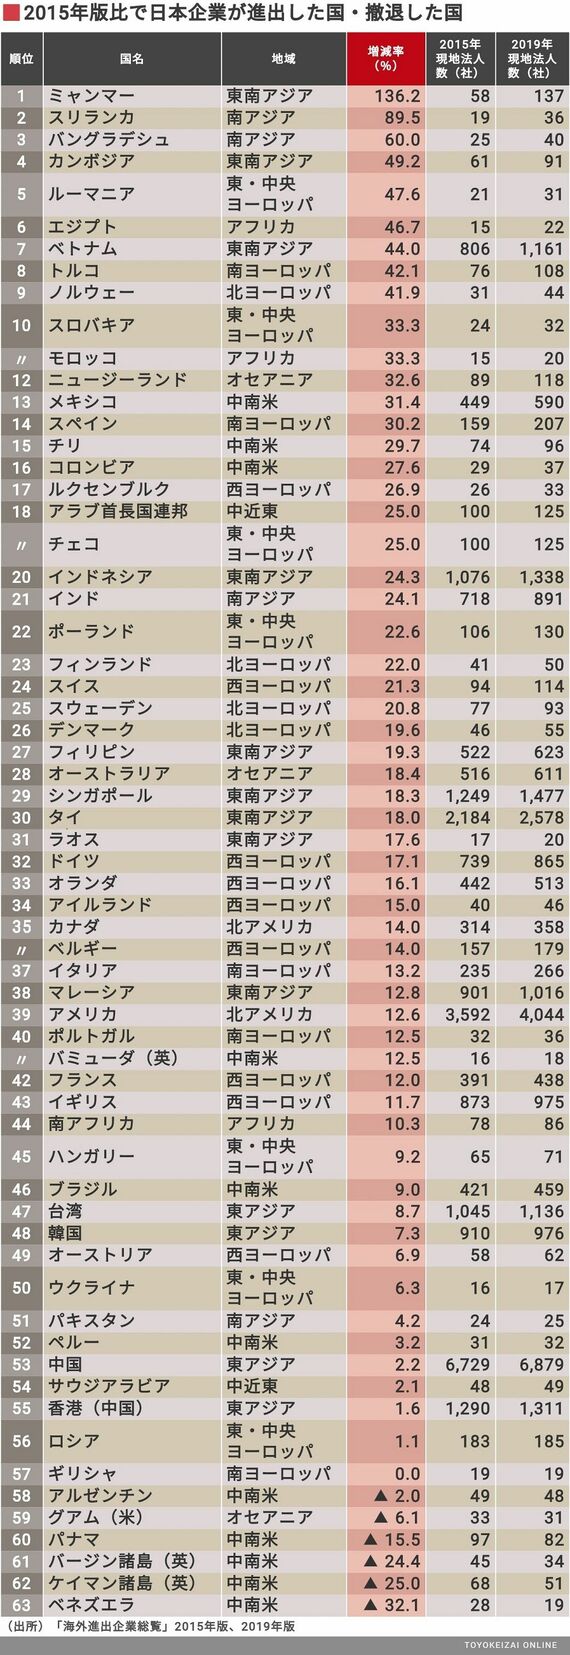 これが最近 日本企業が進出した 外国リストだ 企業ランキング 東洋経済オンライン 社会をよくする経済ニュース